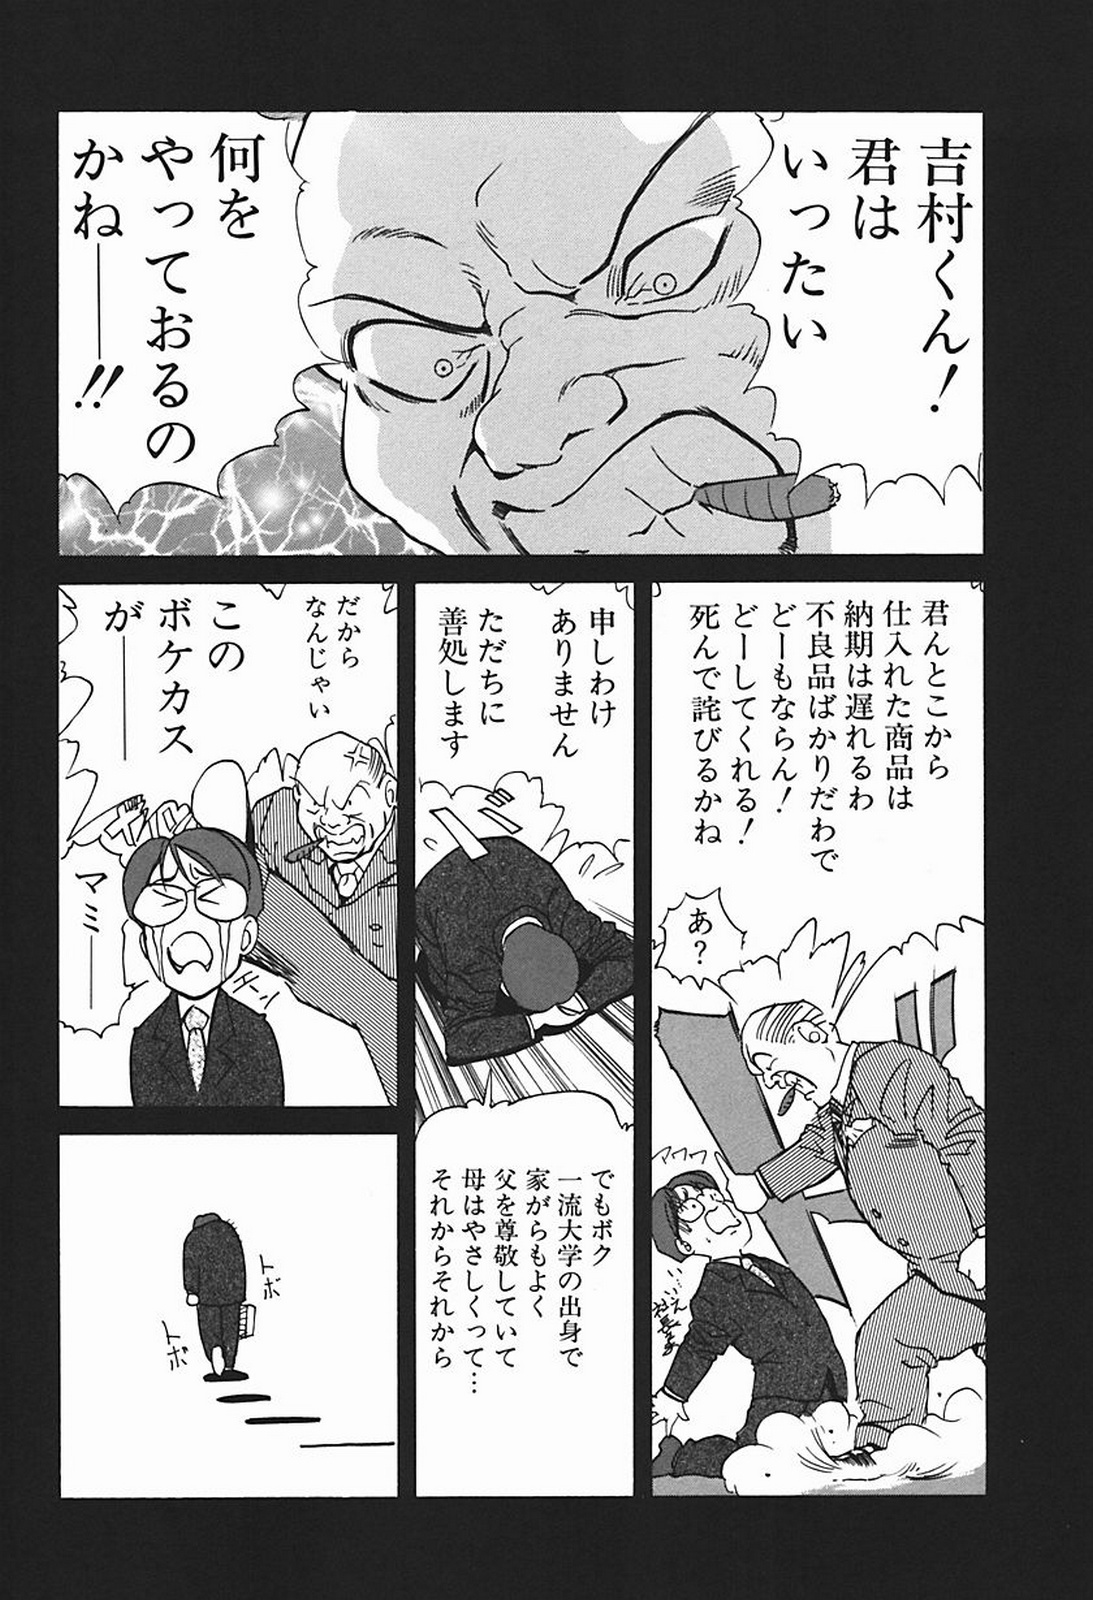 [Misaki Yukihiro] Body Therapy page 43 full